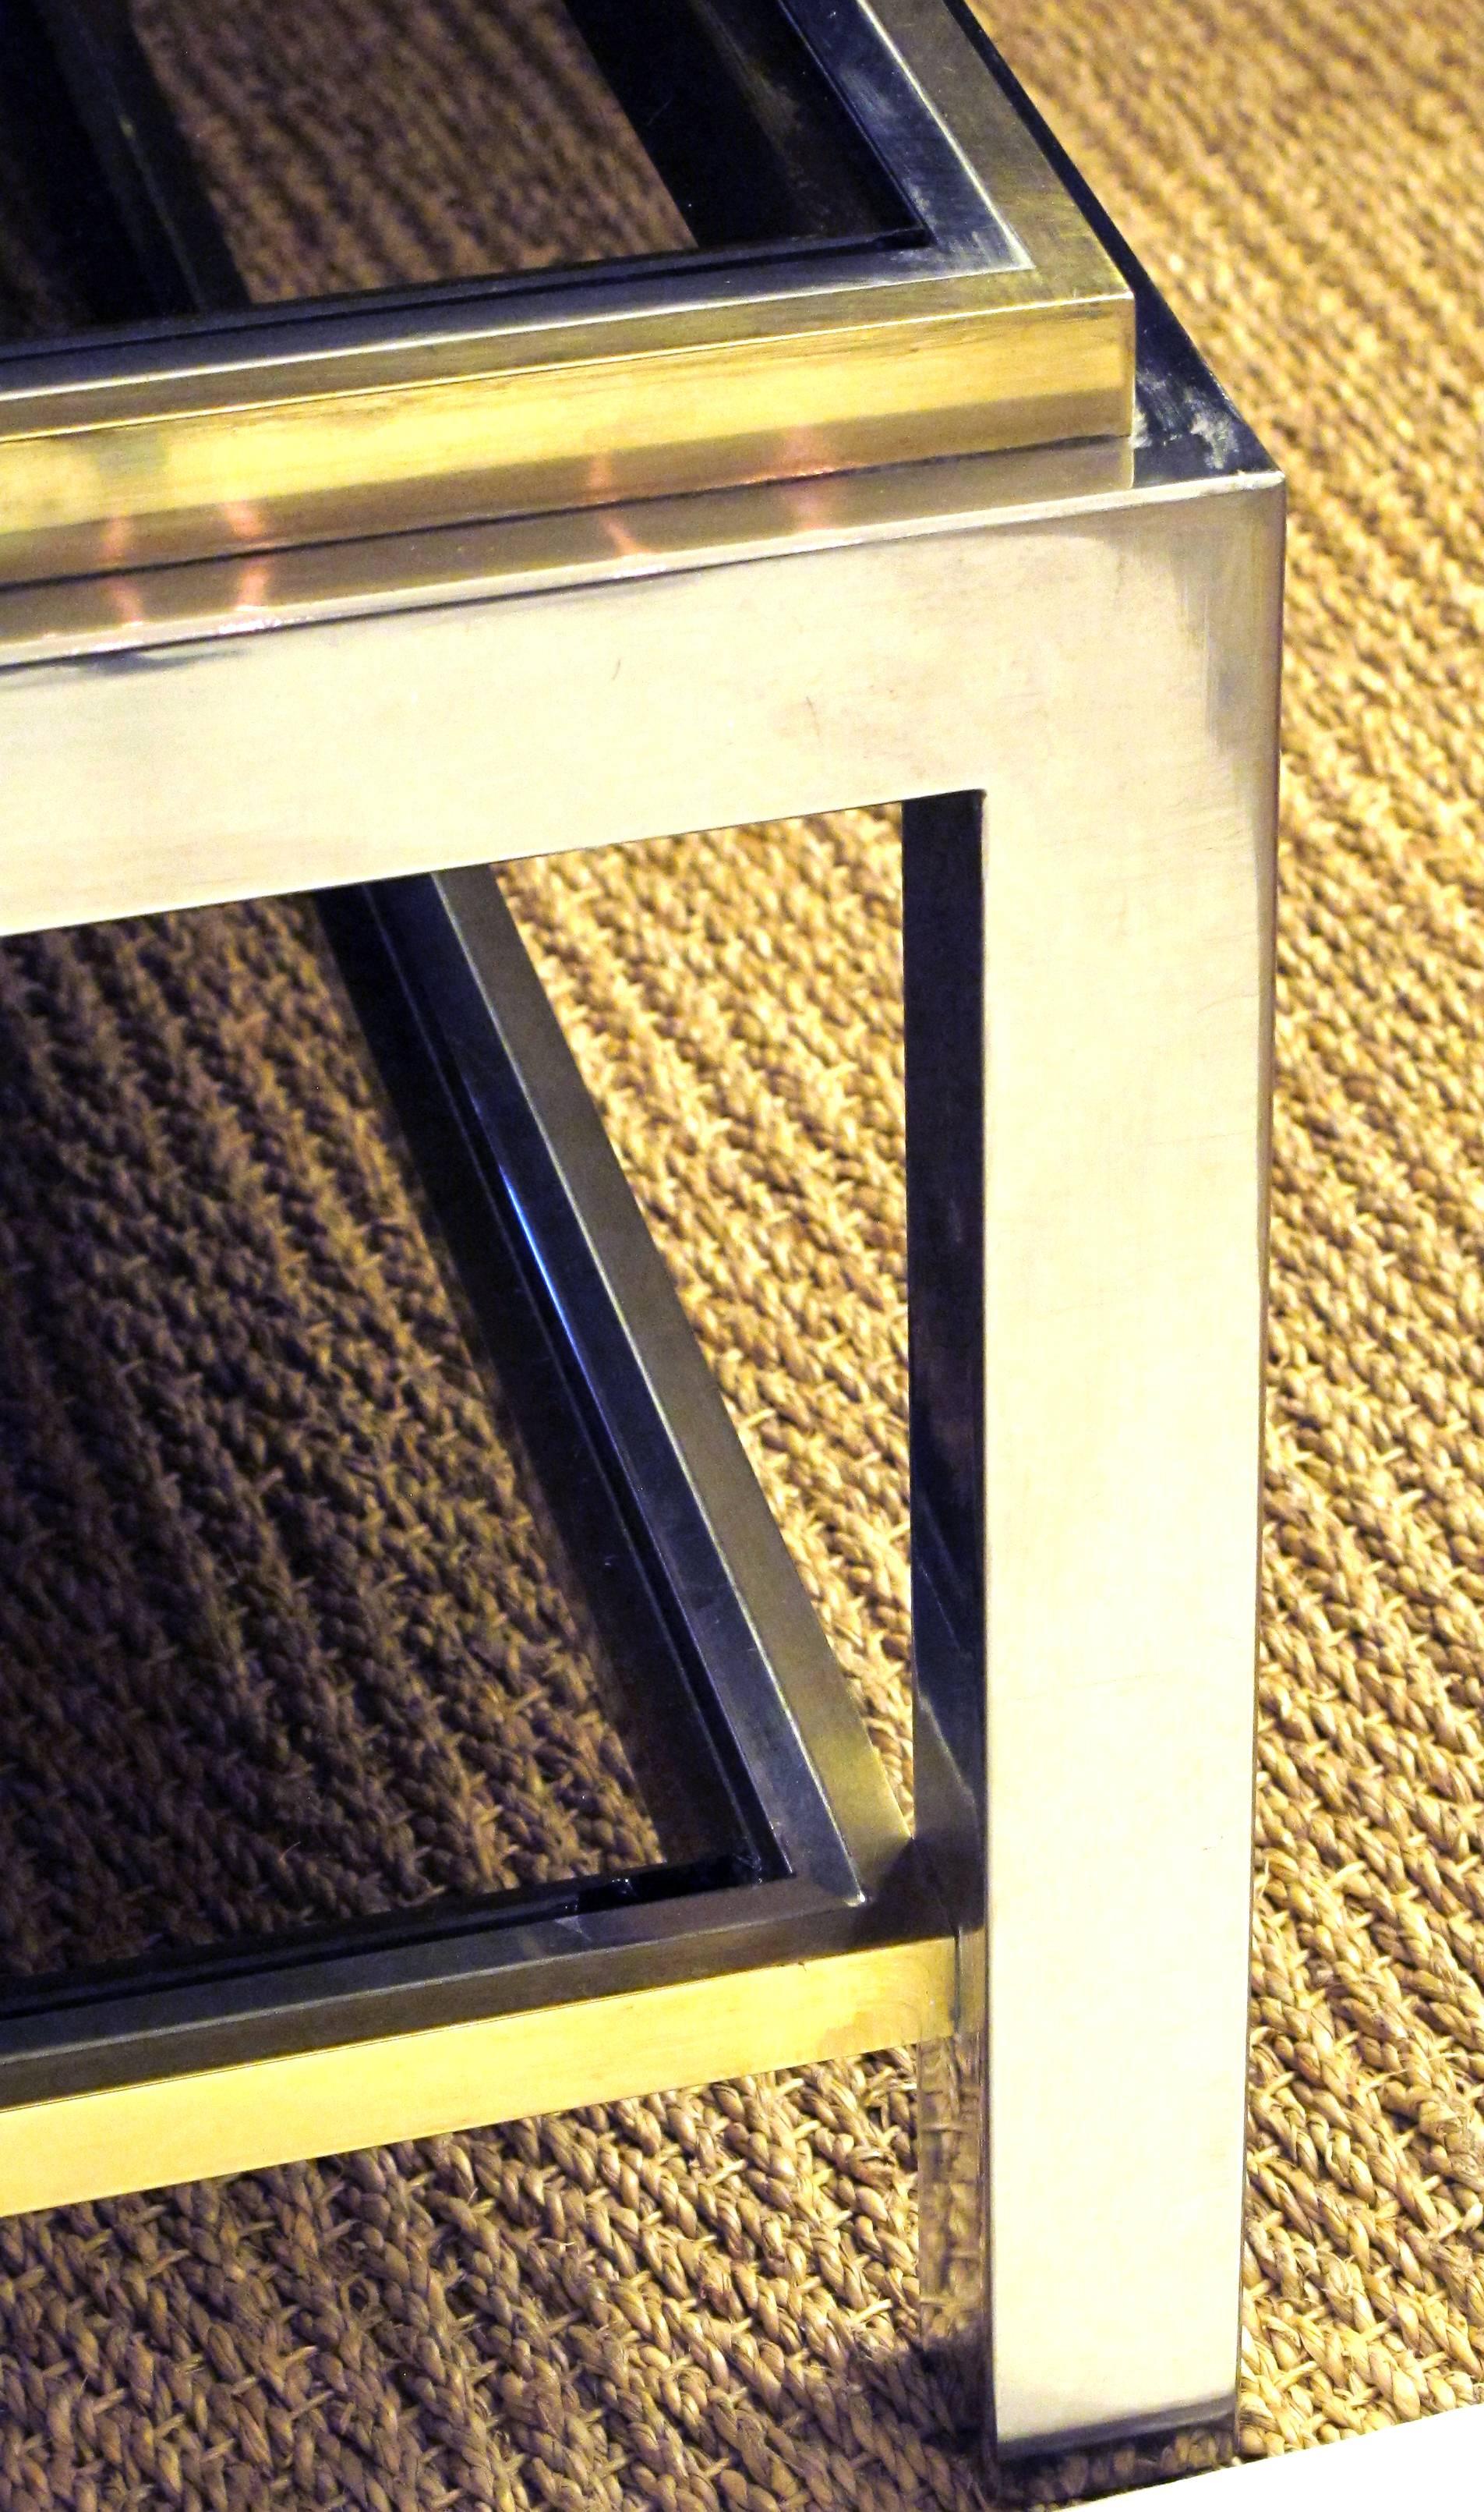 Table basse carrée en laiton patiné et nickel poli, signée Jean Charles, datant des années 1970, avec plateau en verre fumé et étagère inférieure ; le grand plateau carré en verre inséré dans un cadre en chrome et laiton repose sur des supports